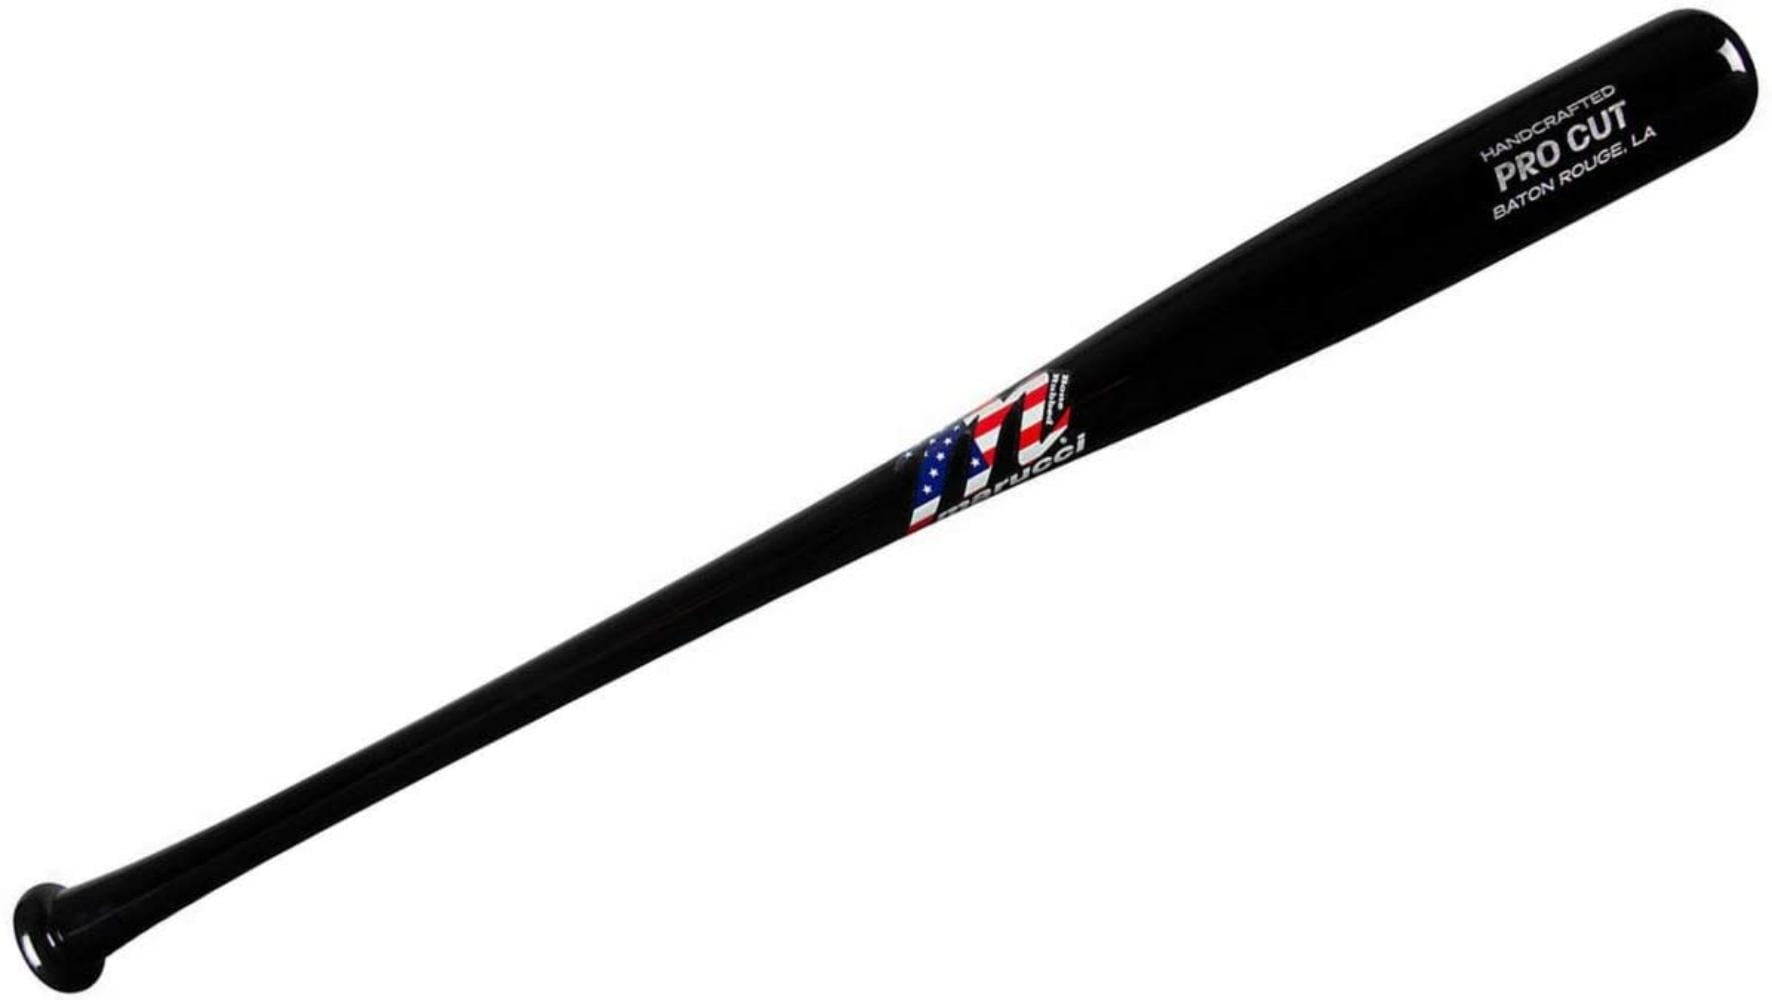 Marucci Pro Cut USA Maple Wood Baseball Bat MBMPC-USA MBMPC-USA 34 inch 